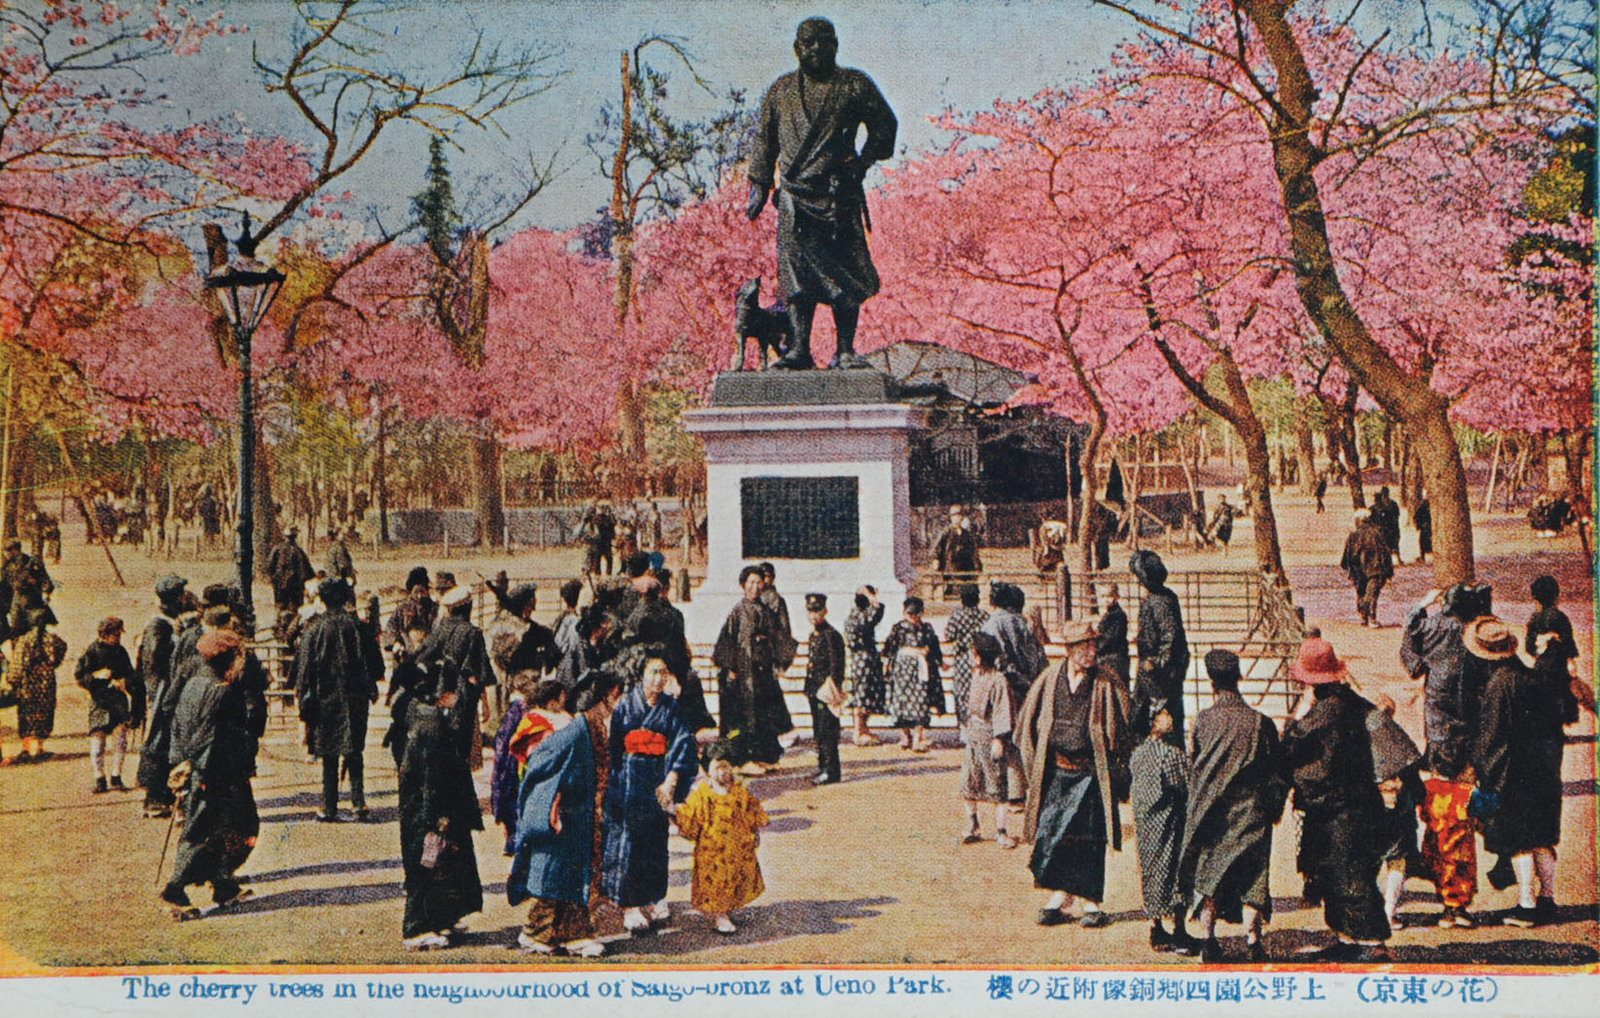 上野公園西郷銅像附近の桜 | 昭和館デジタルアーカイブ